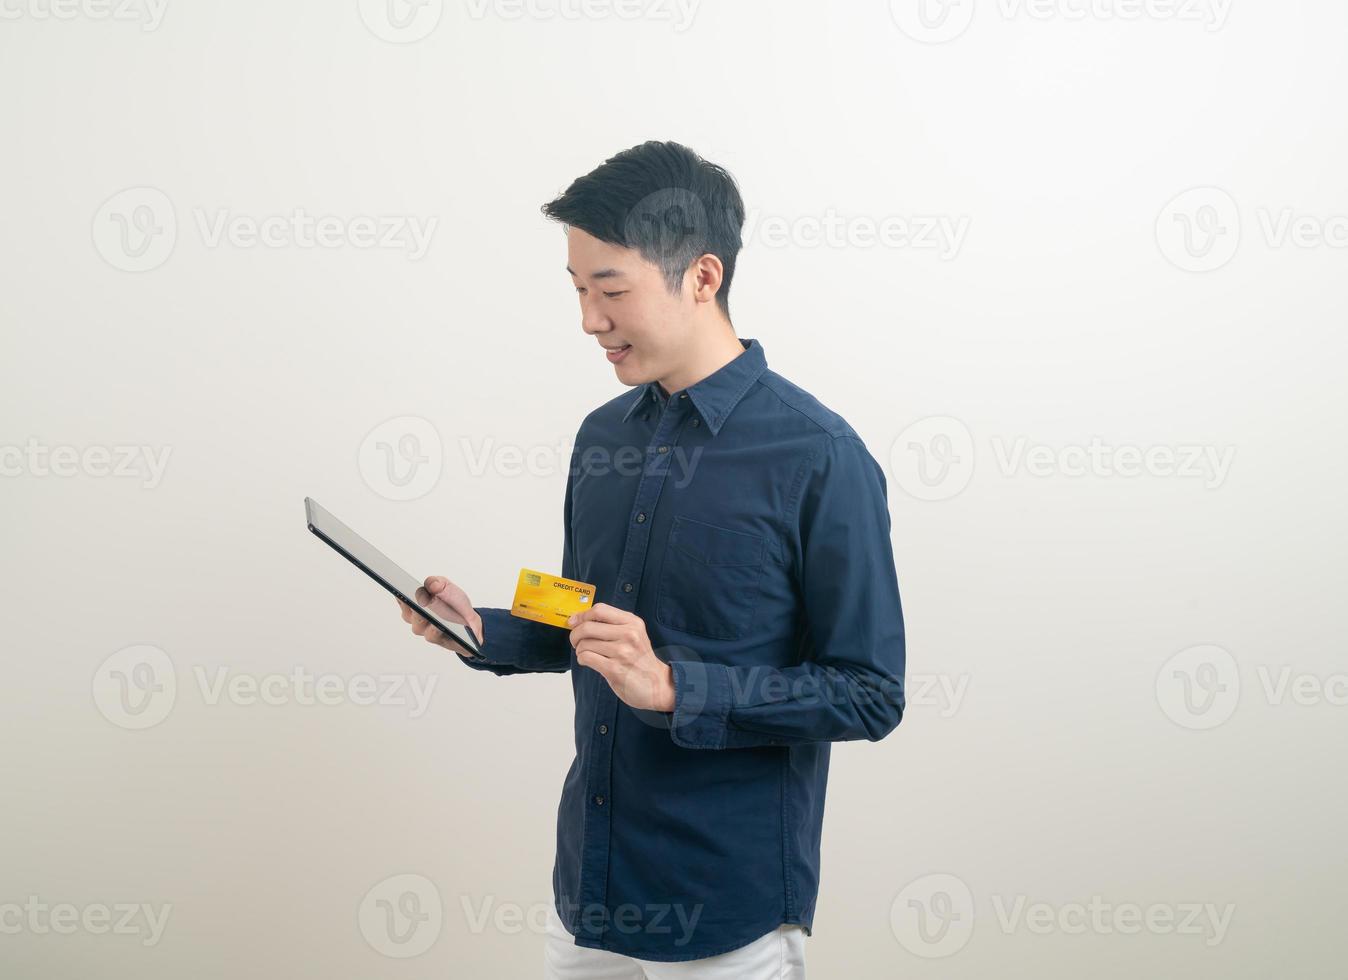 Porträt junger asiatischer Mann mit Kreditkarte und Tablet foto